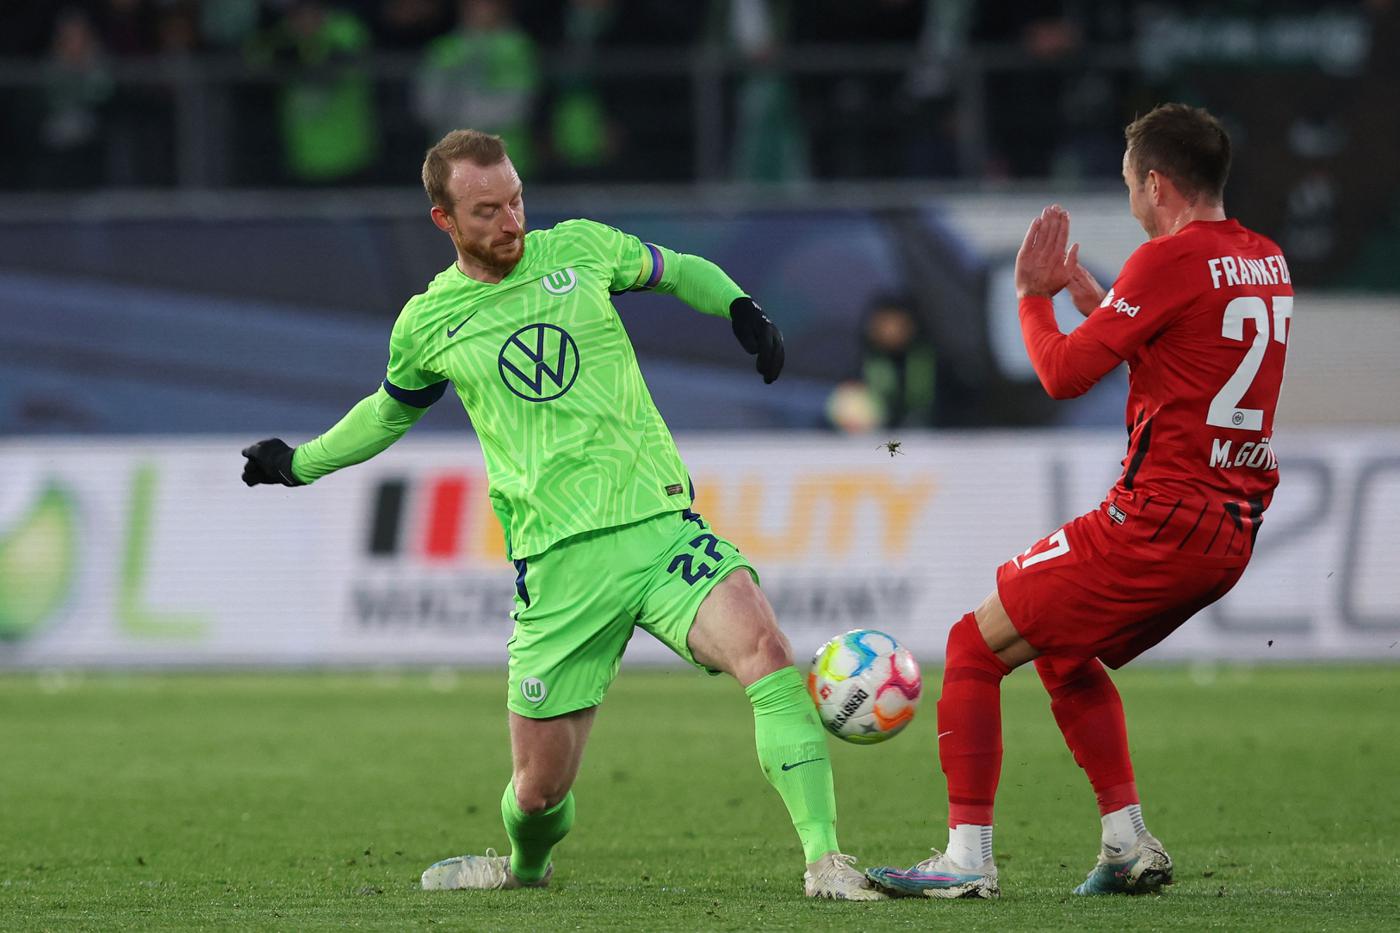 Wolfsburg v Eintracht - 2-2. Mistrzostwo Niemiec, runda 23. Przegląd meczu, statystyki.